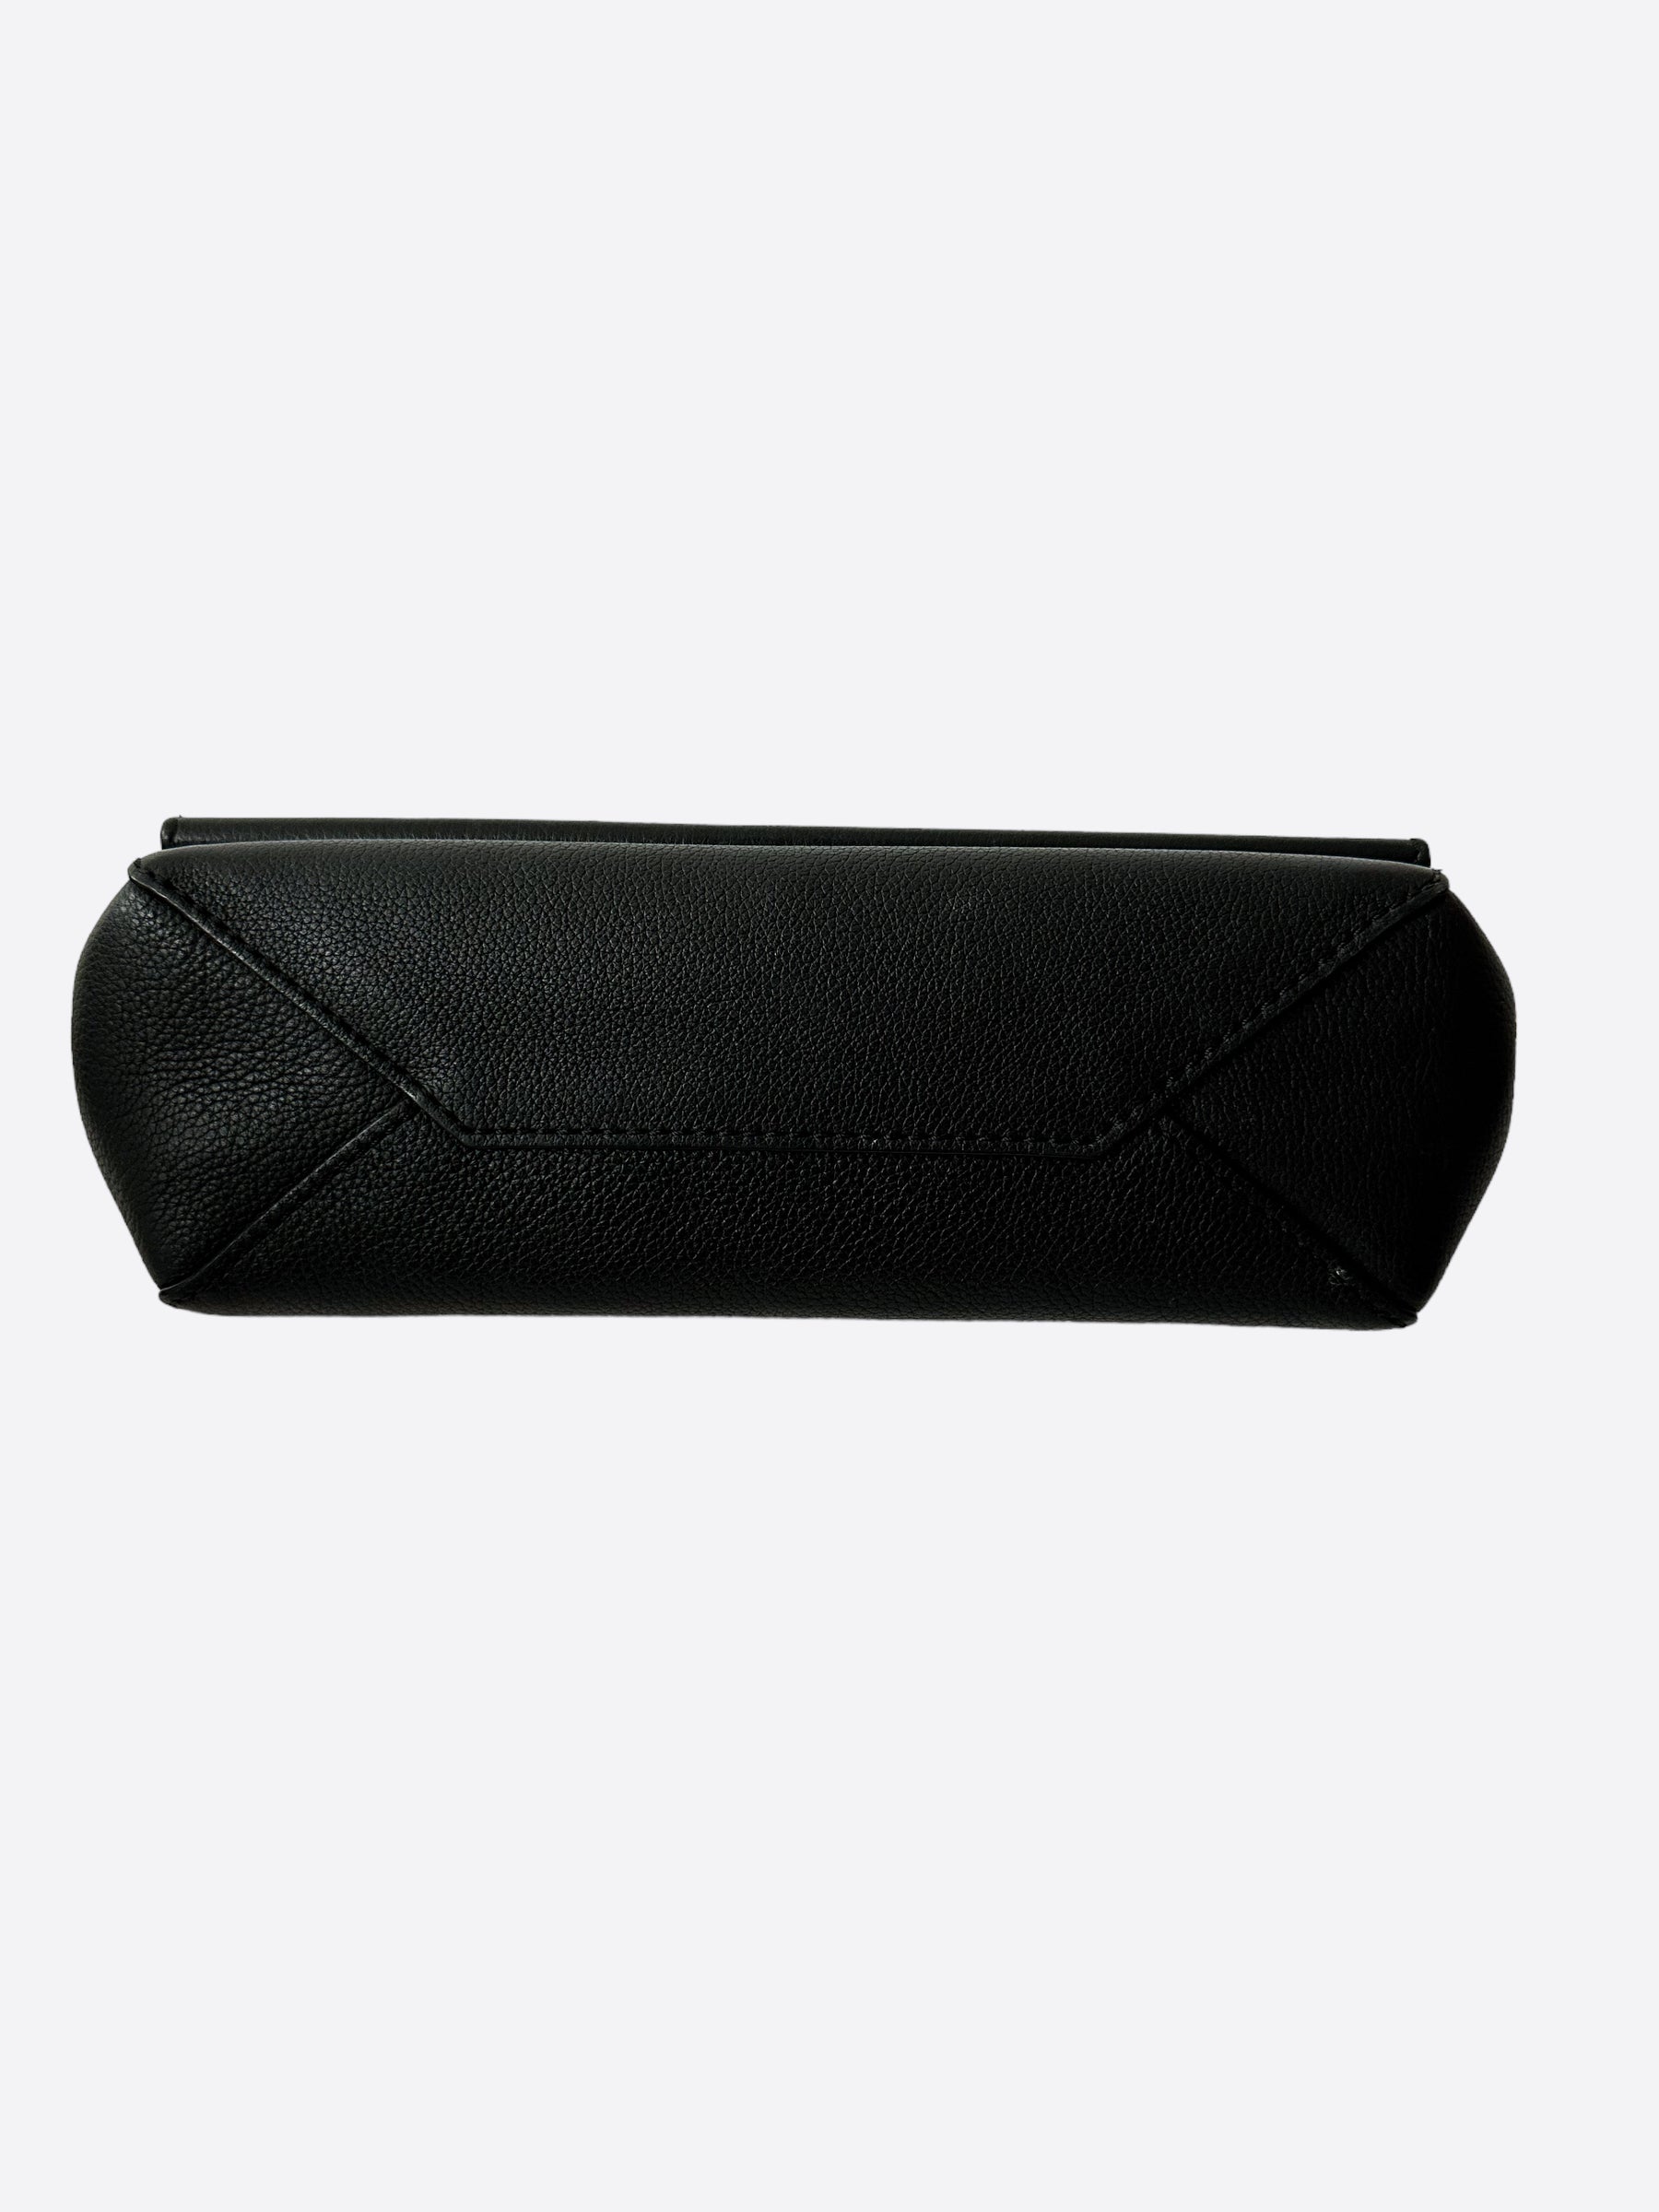 louis vuitton black leather clutch